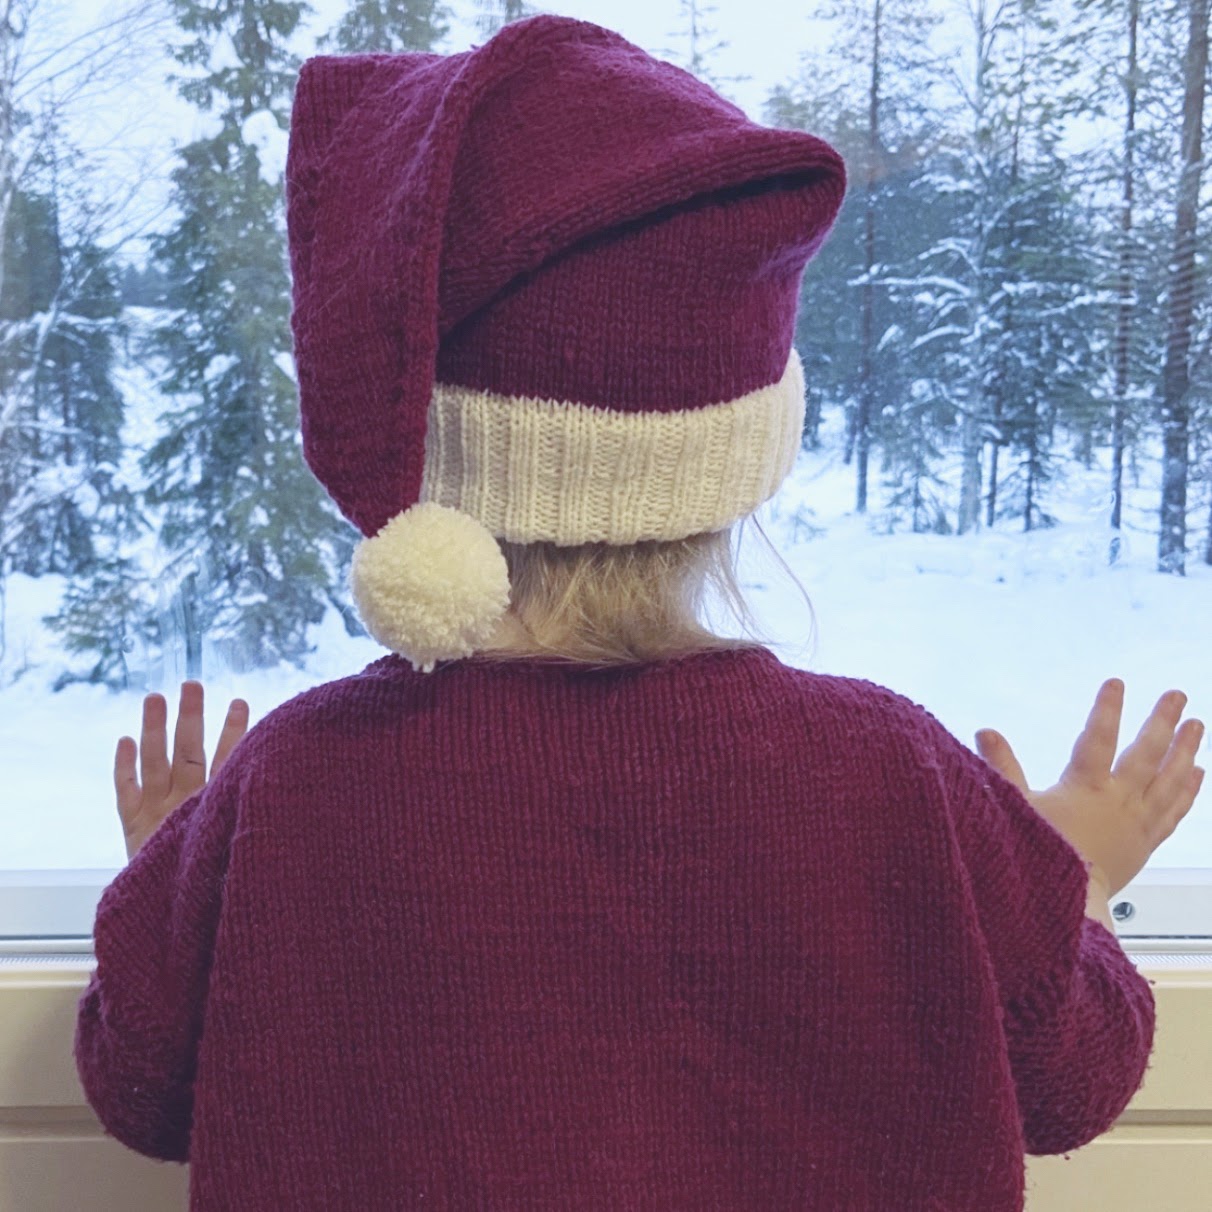 Holiday Baby Santa Hat Hand KnitBaby Christmas hand knit hatBaby Christmas hatInfant hand knit hatInfant Santa hat